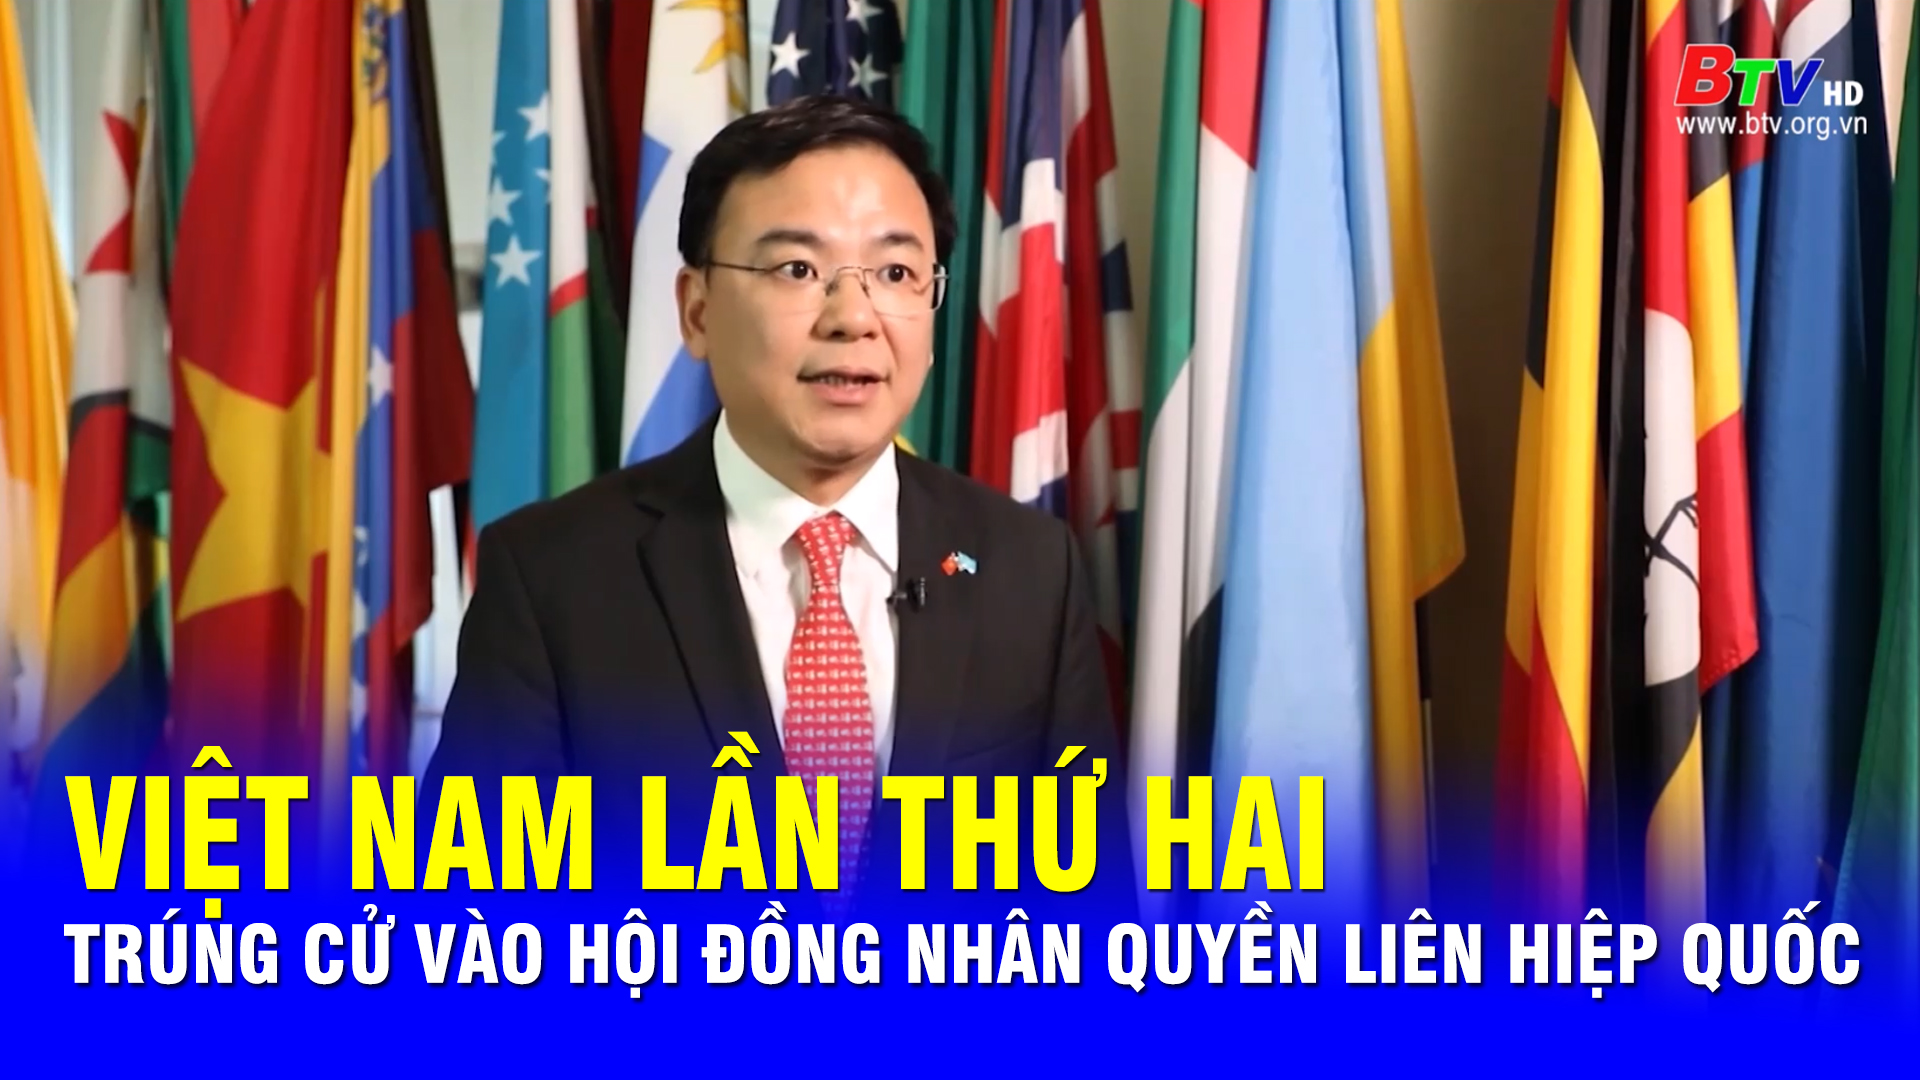 Việt Nam lần thứ hai trúng cử vào Hội đồng Nhân quyền Liên hiệp quốc